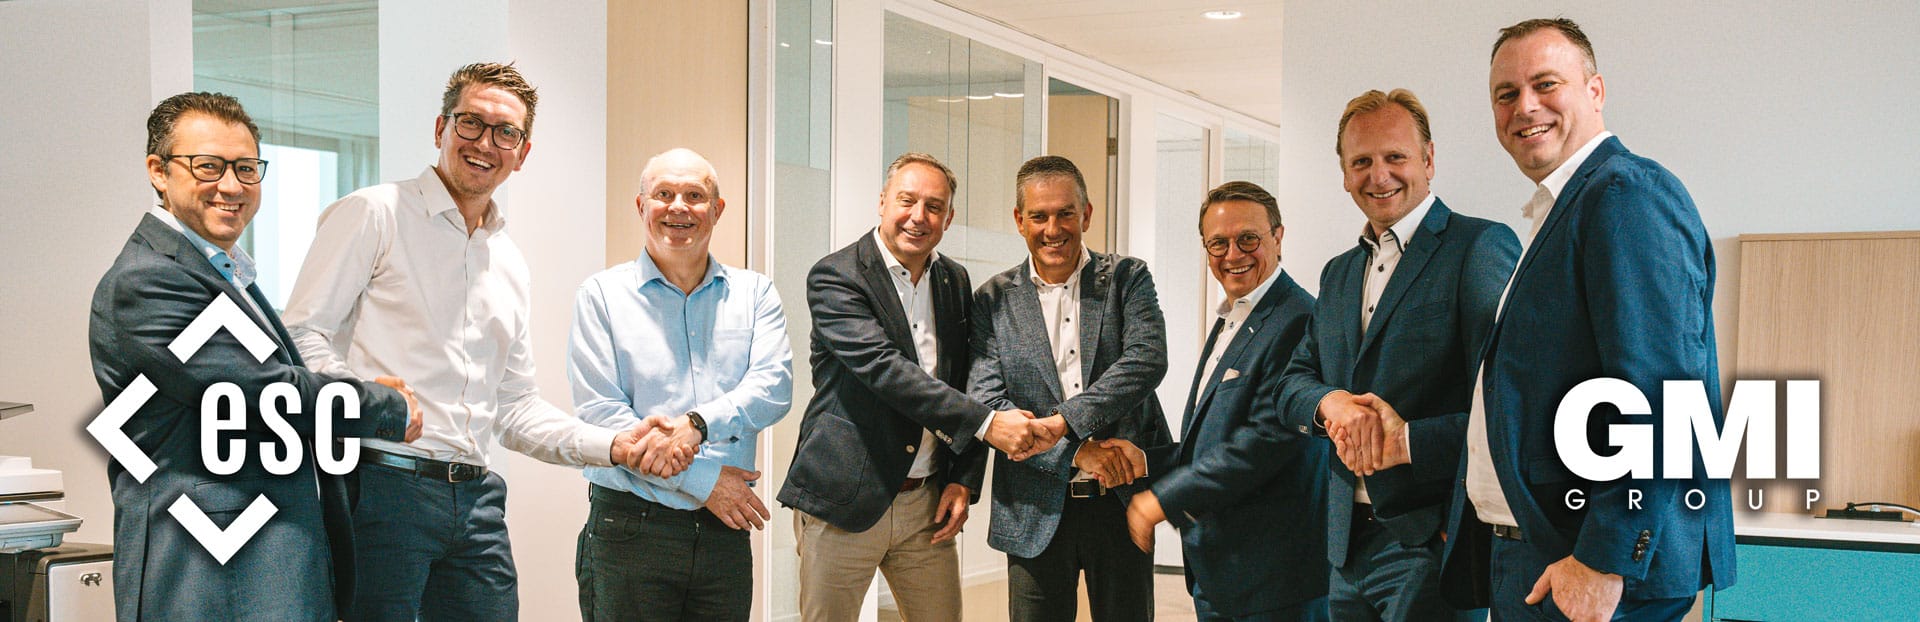 GMI group | ESC Groep doet strategische overname en wordt een van de grootste Microsoft Dynamics 365-partners in België én Nederland